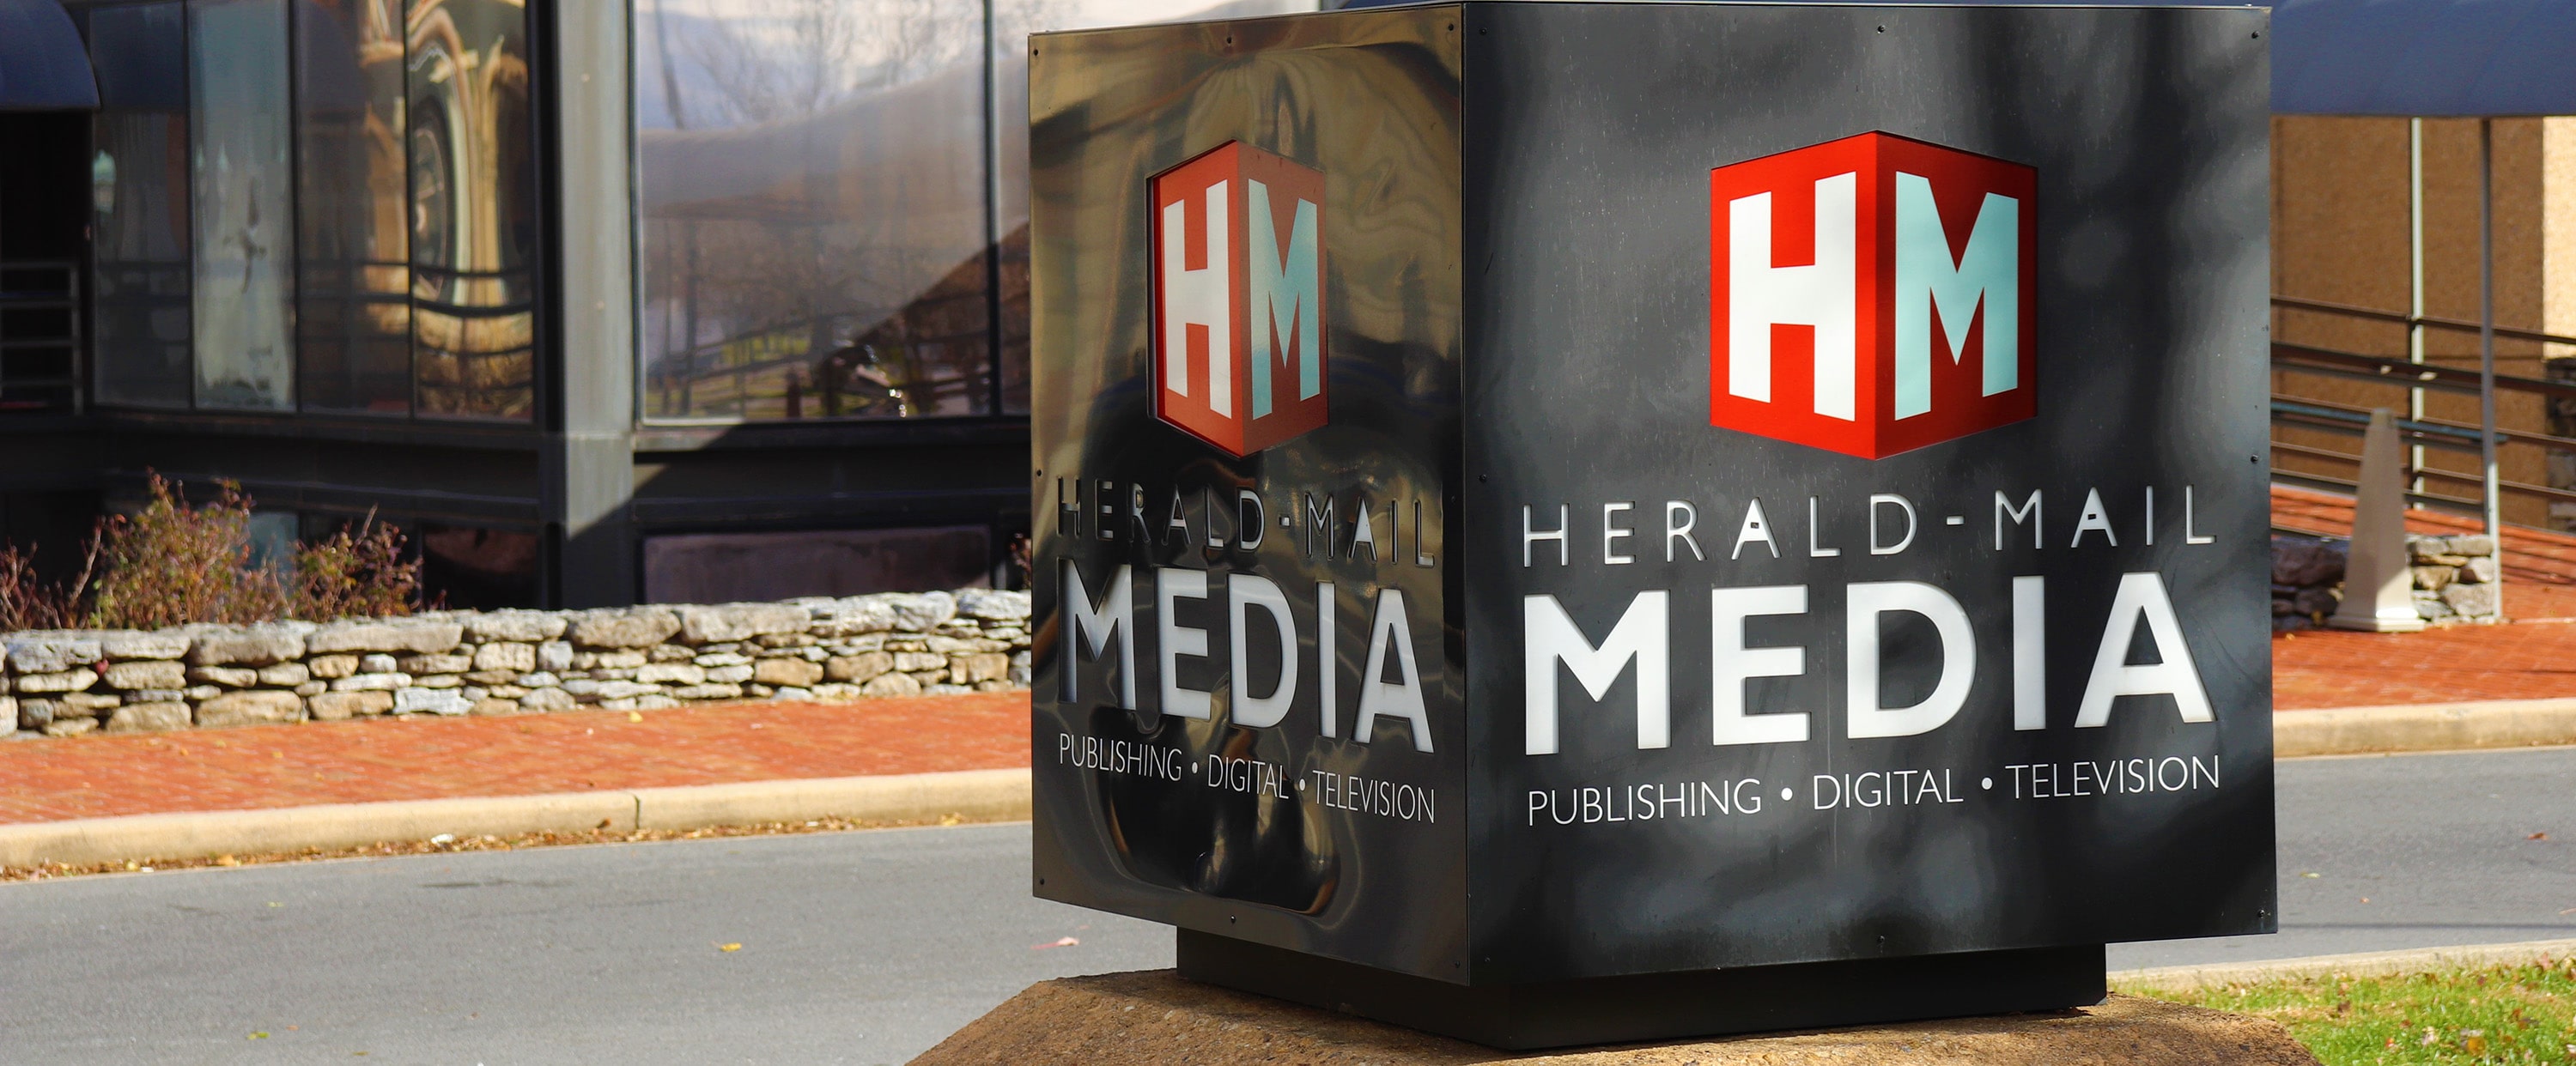 Herald-Mail Media Internship Program